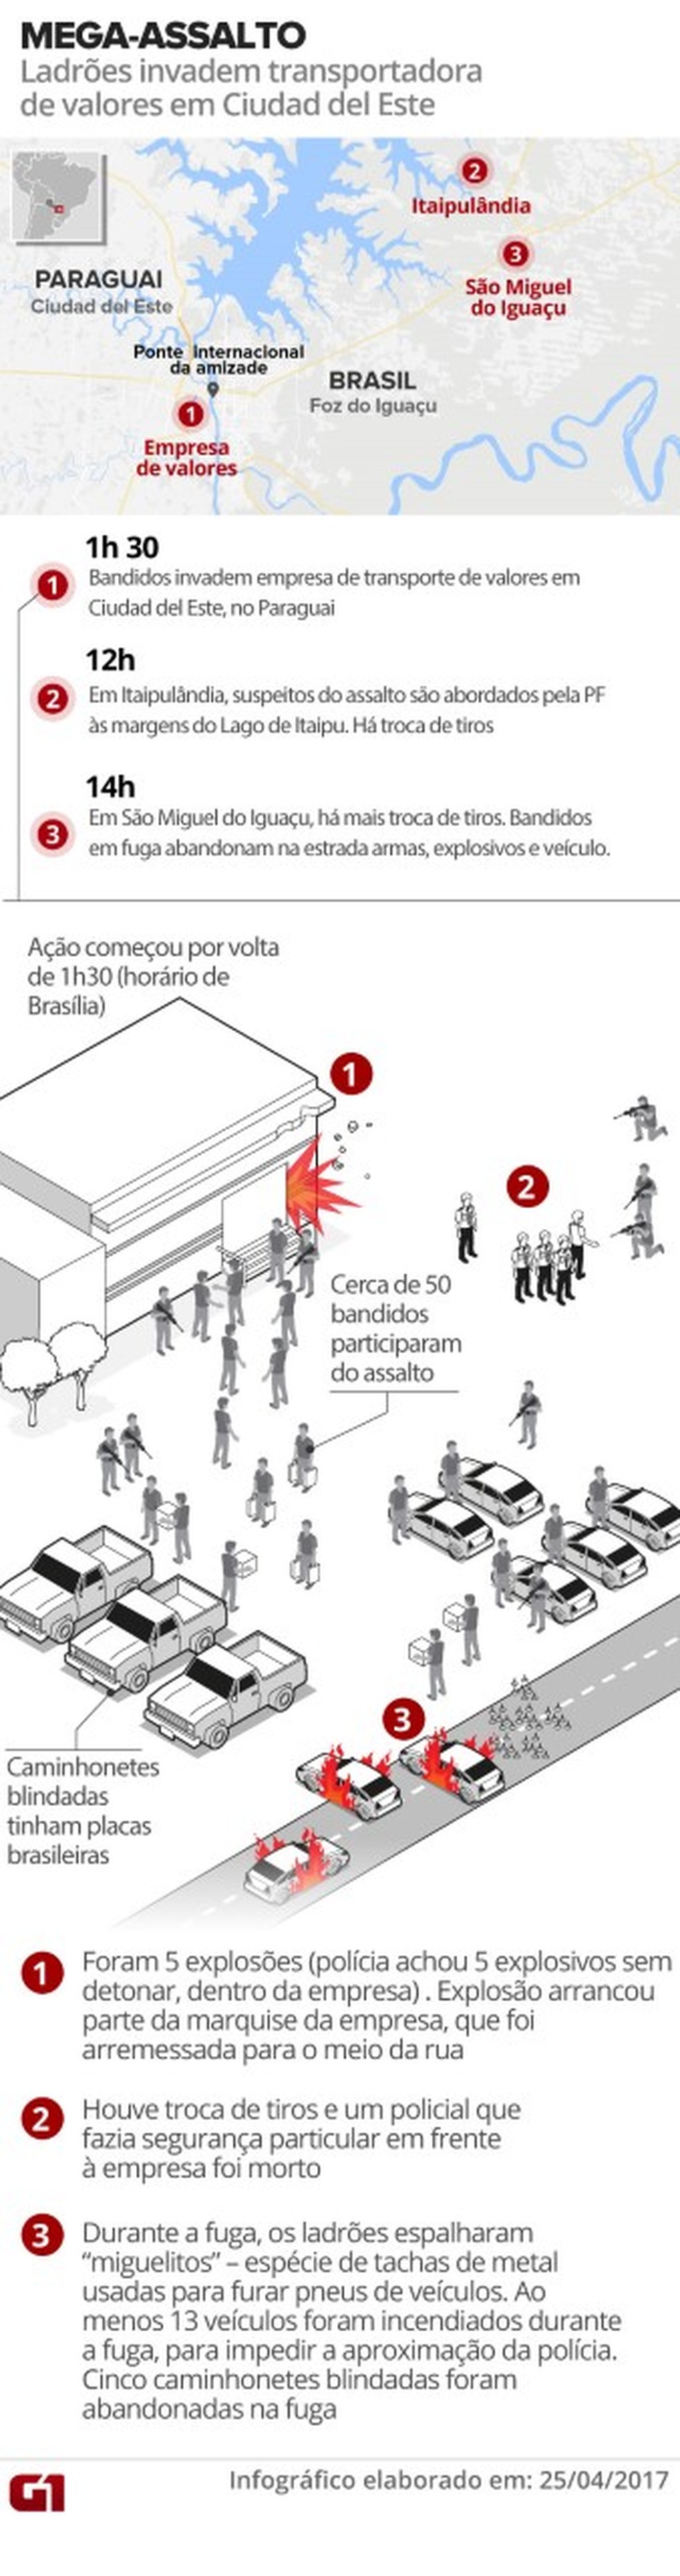 Mega-assalto no Paraguai (Foto: Editoria de Arte/G1)